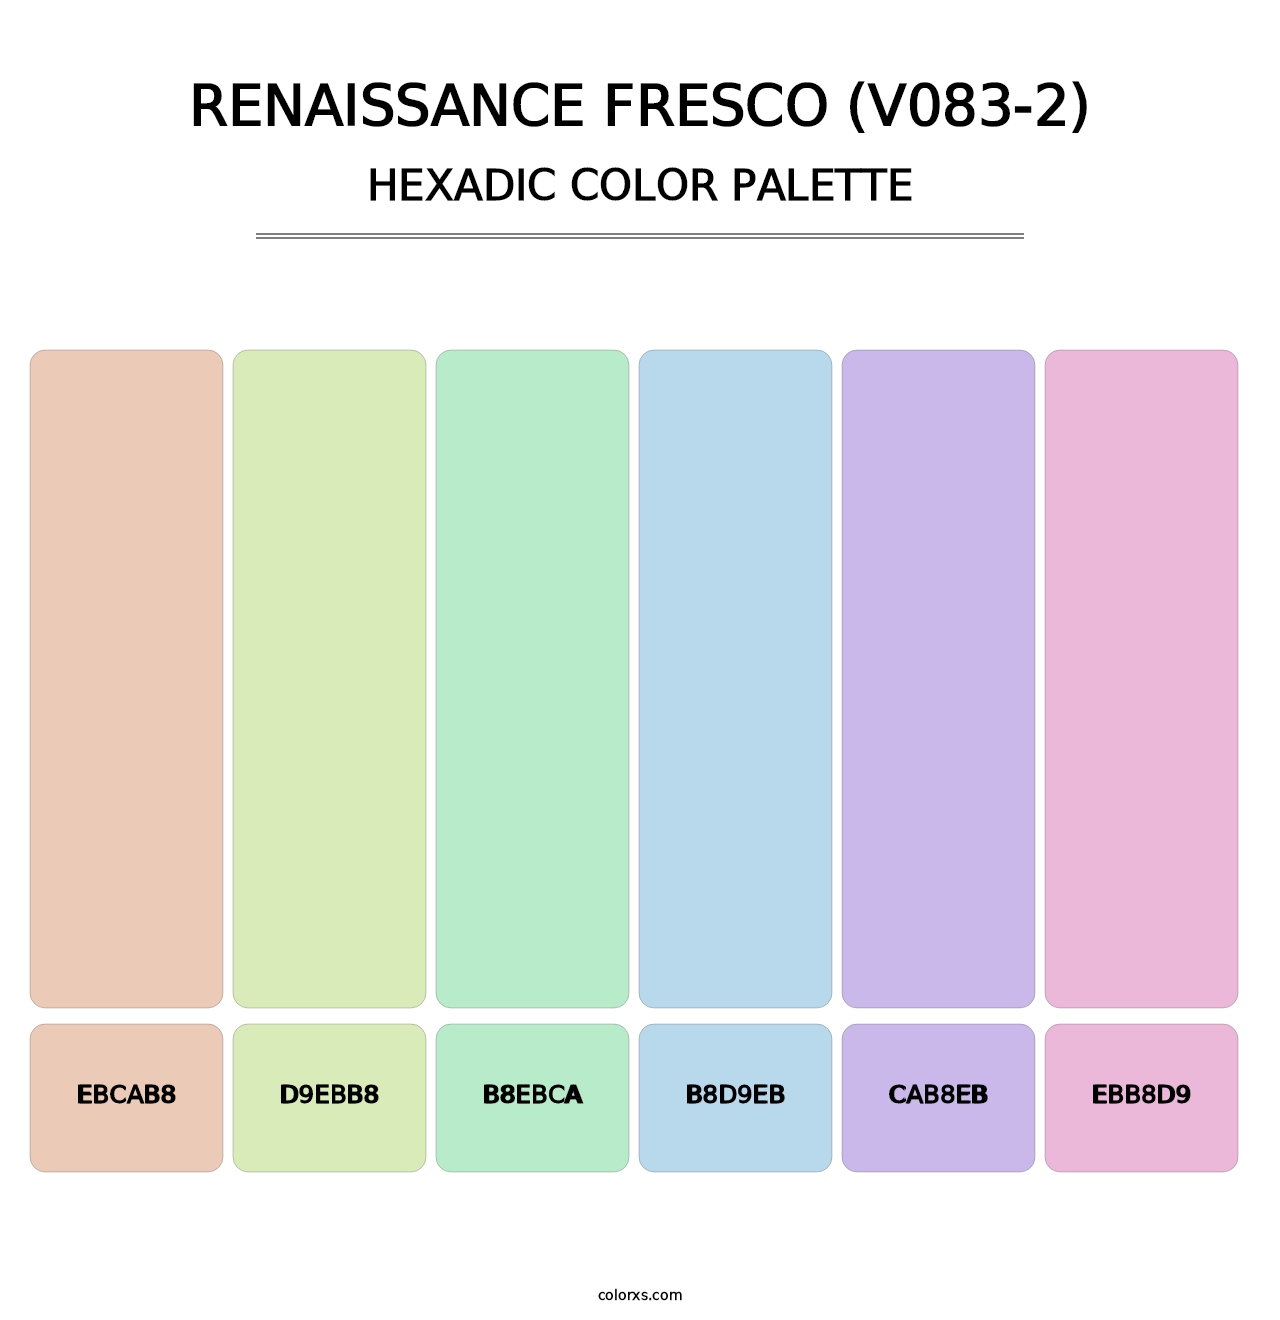 Renaissance Fresco (V083-2) - Hexadic Color Palette